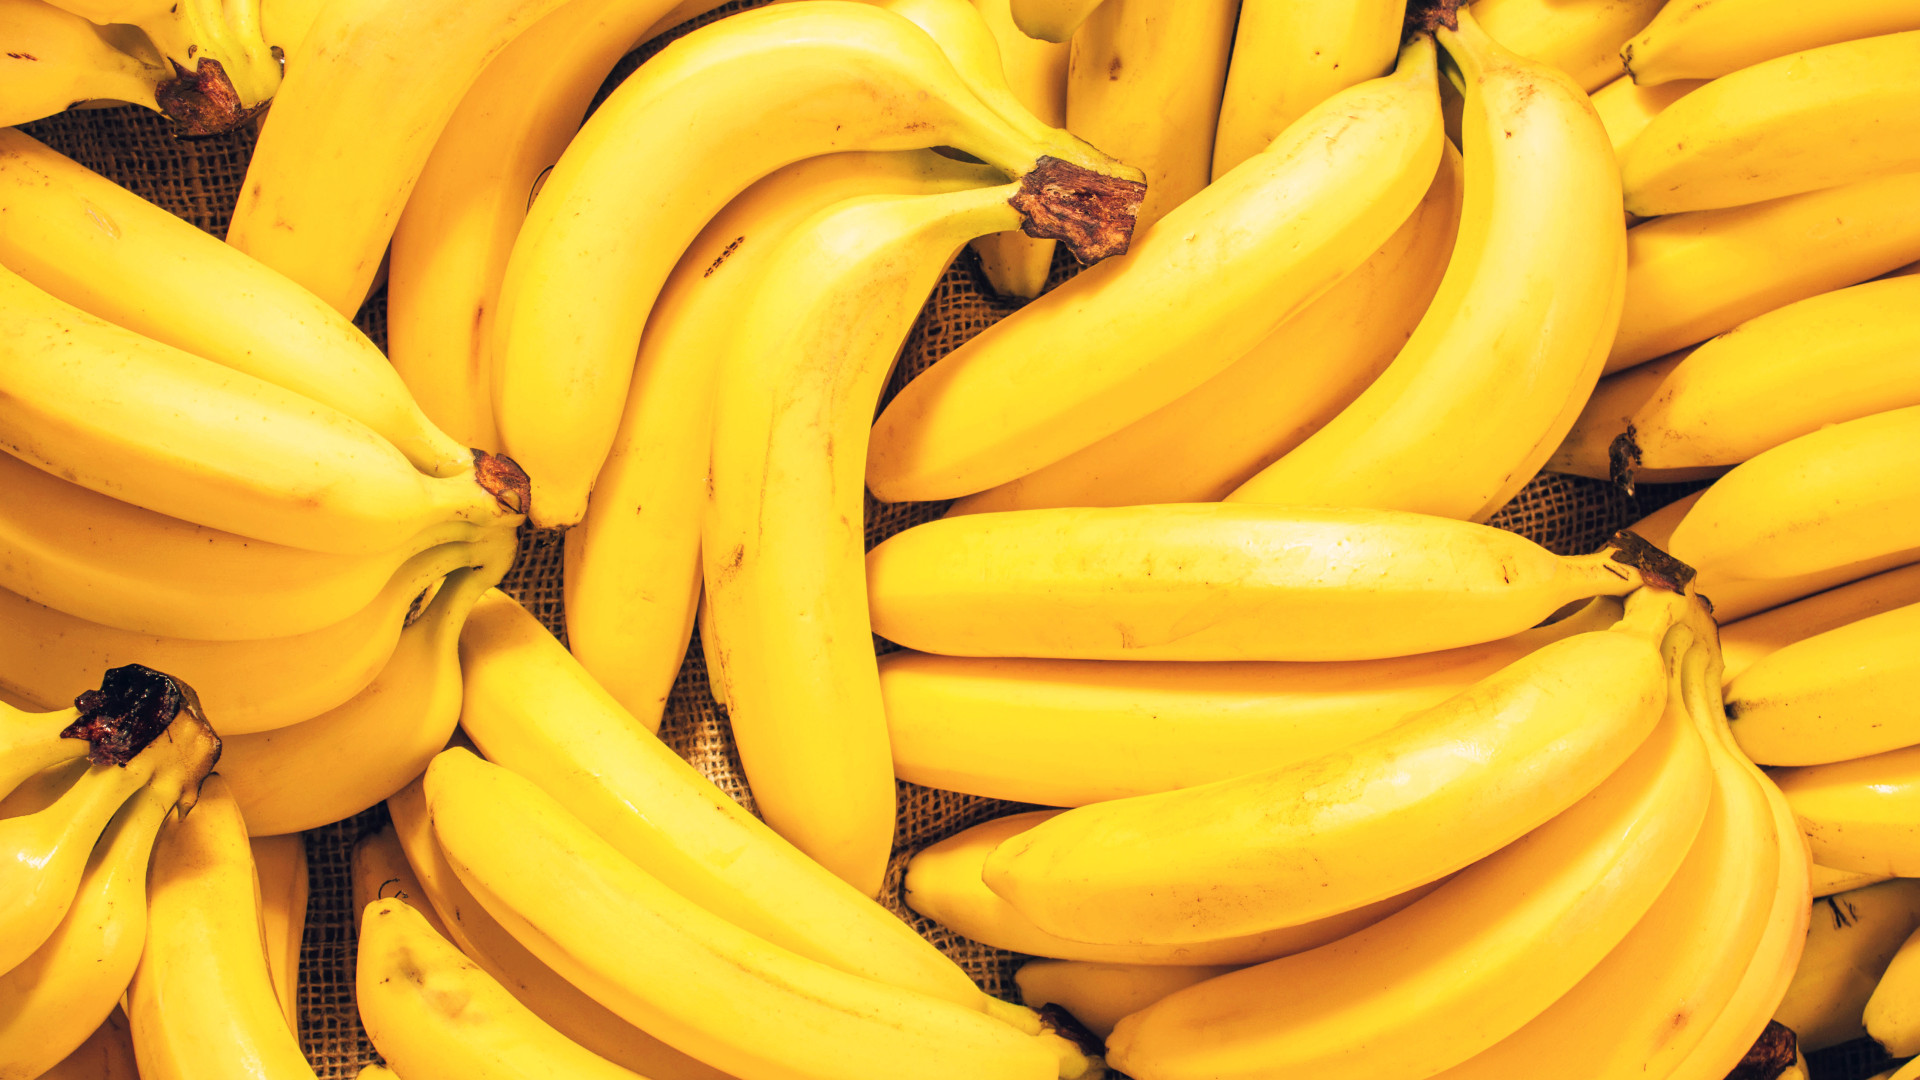  Unelmointi kypsästä banaanista: Mitkä ovat merkitykset, symboliikka ja henkisyys?